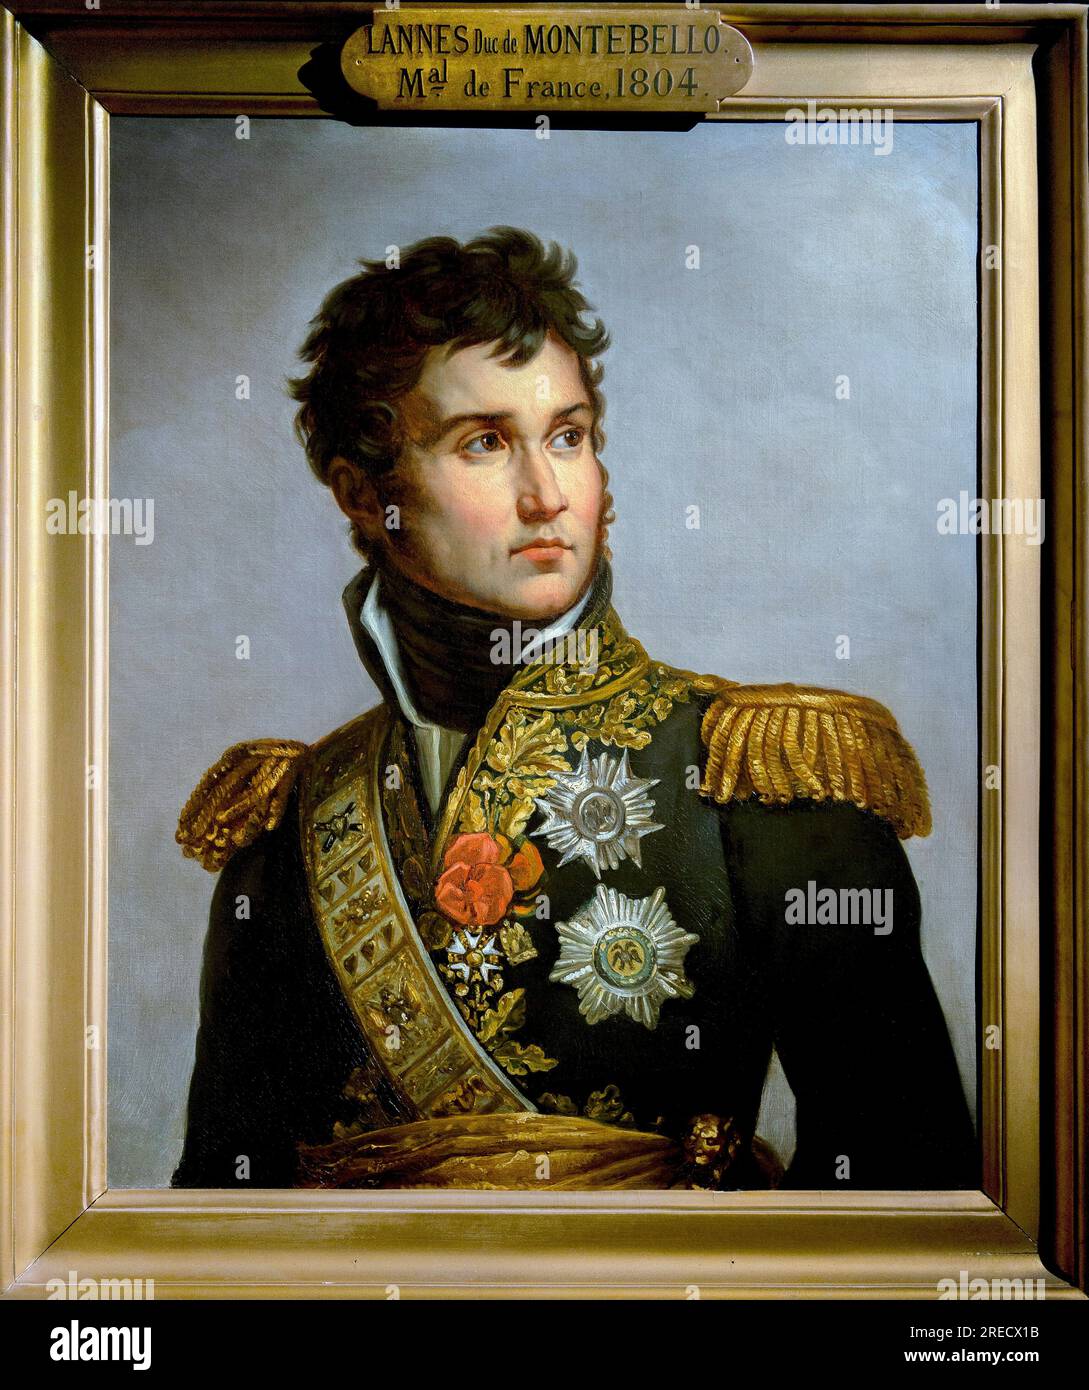 'Portrait de Jean Lannes, duc de Montebello (1769-1809) marechal d'Empire'  Copie de Volpeliere d'apres le portrait en pied de Lannes par Gerard - Paris - Musee de l'Armee Stock Photo